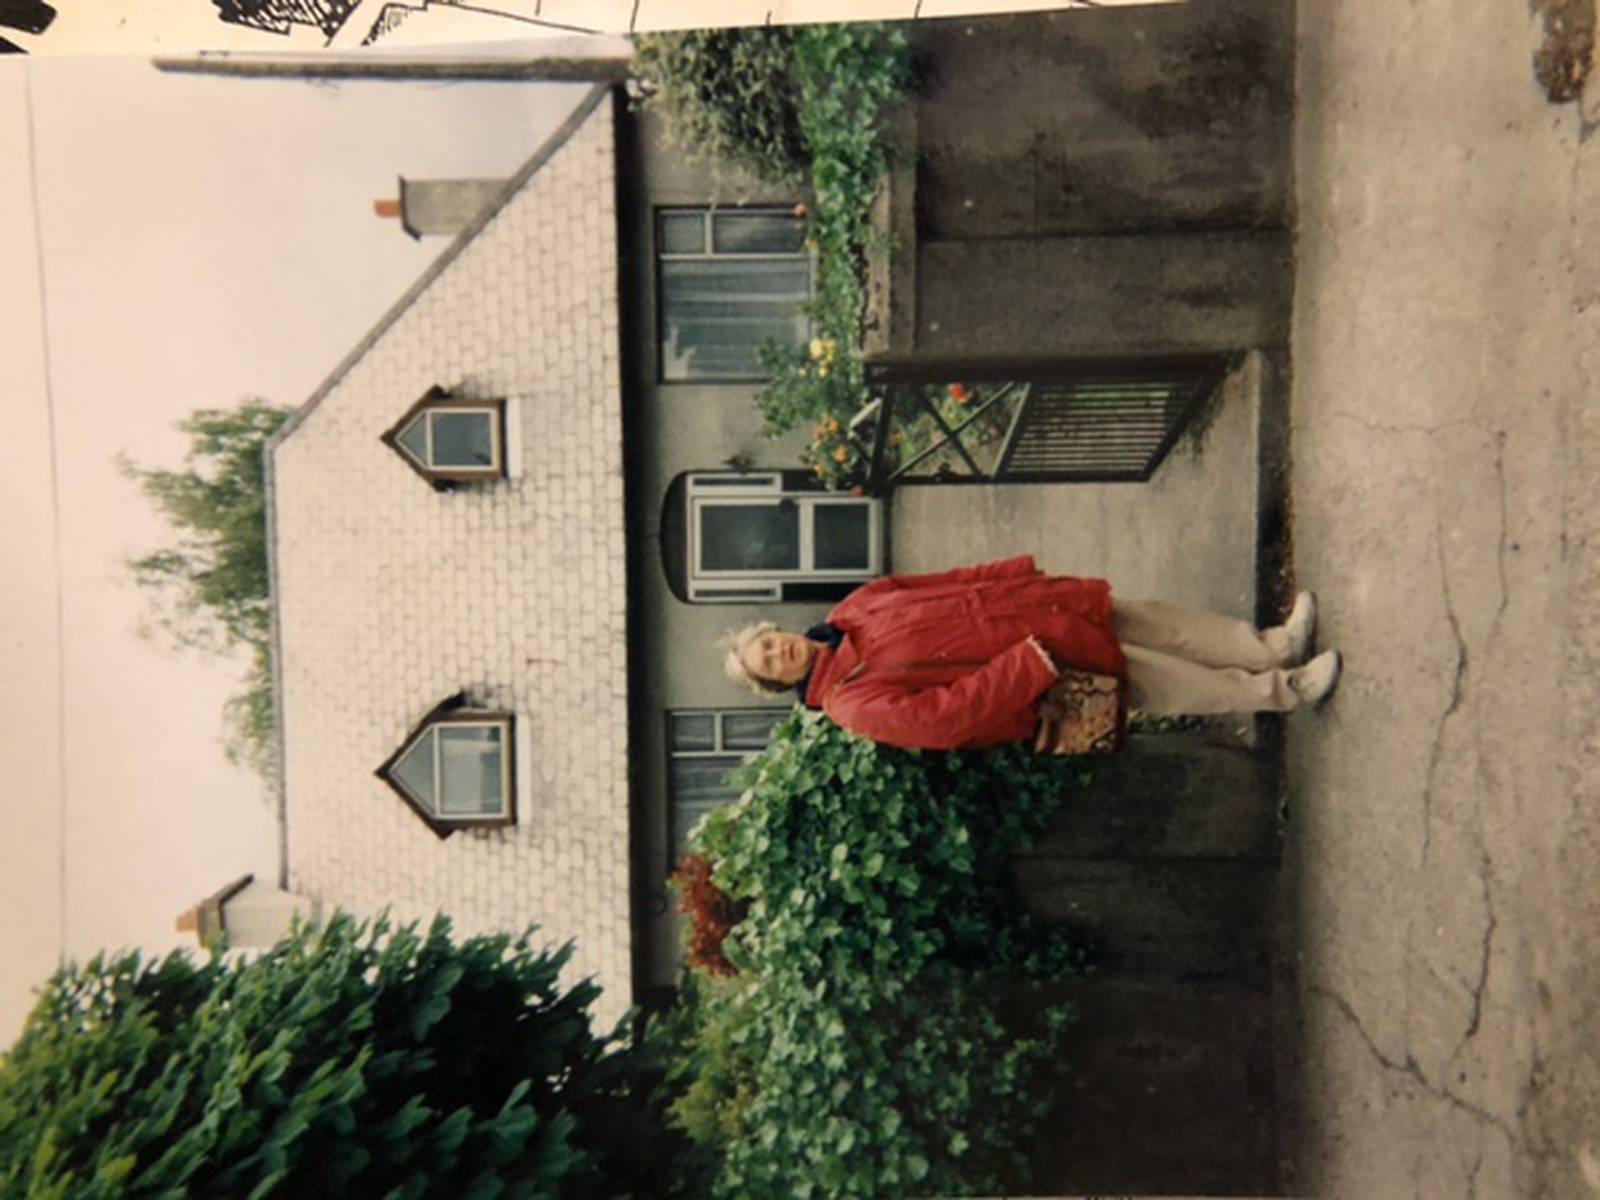  Tiến sĩ Yvonne Balding đứng bên ngoài ngôi nhà nơi bà sinh ra ở thị trấn Carlow, Ireland - Ảnh: The Irish Times